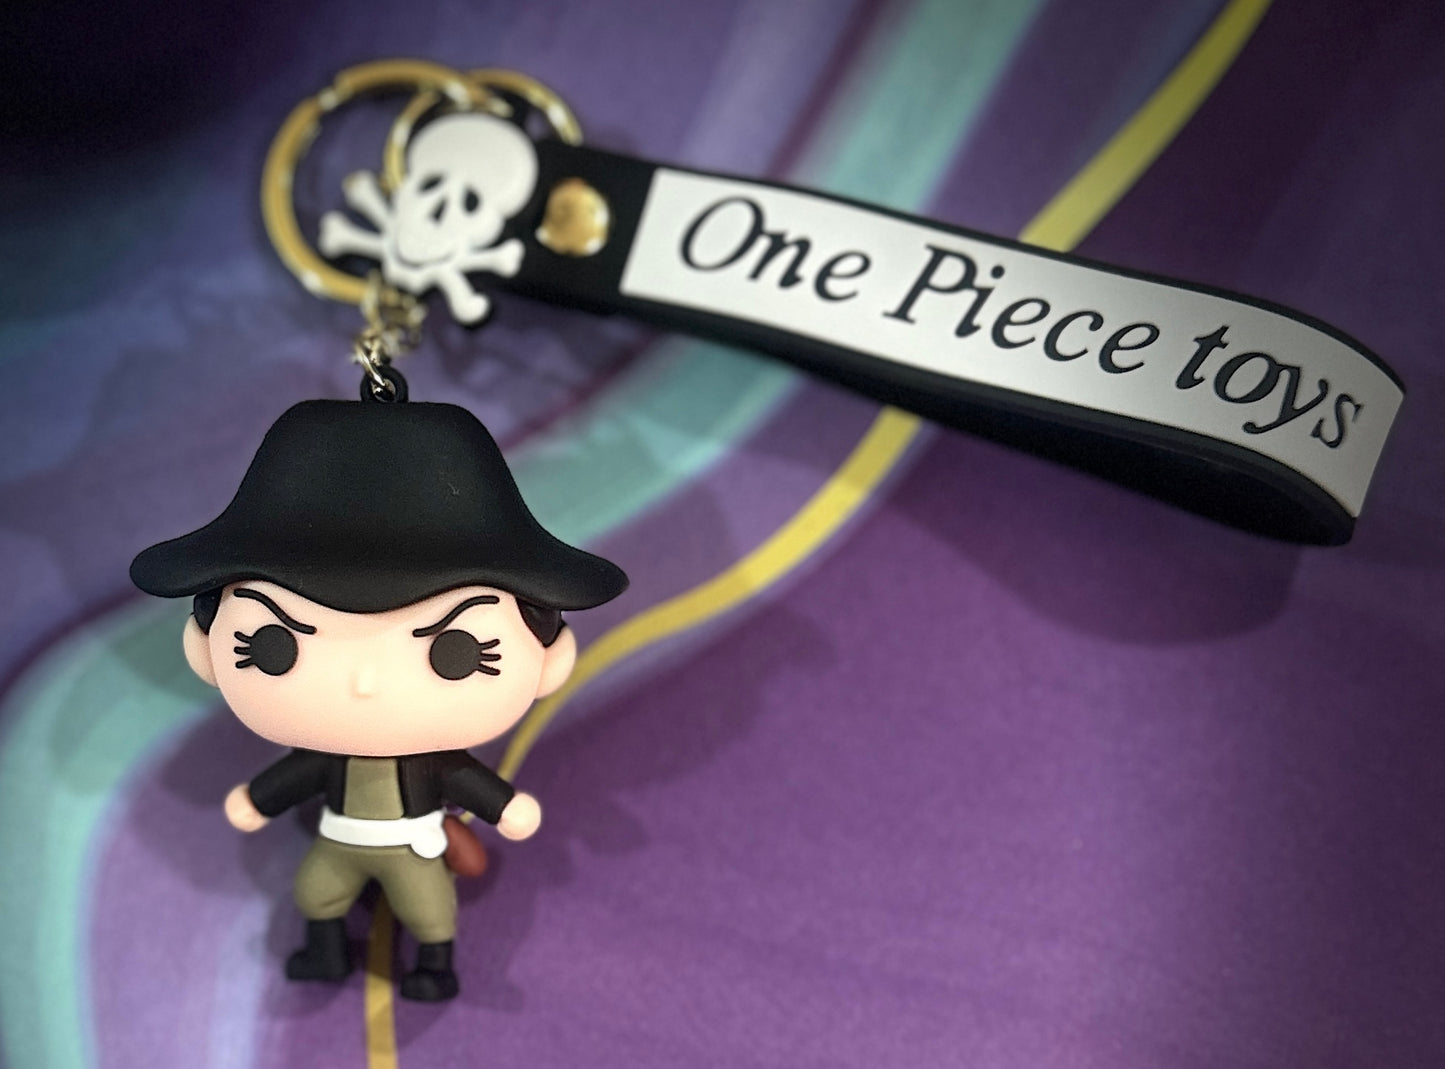 One Piece Keychain